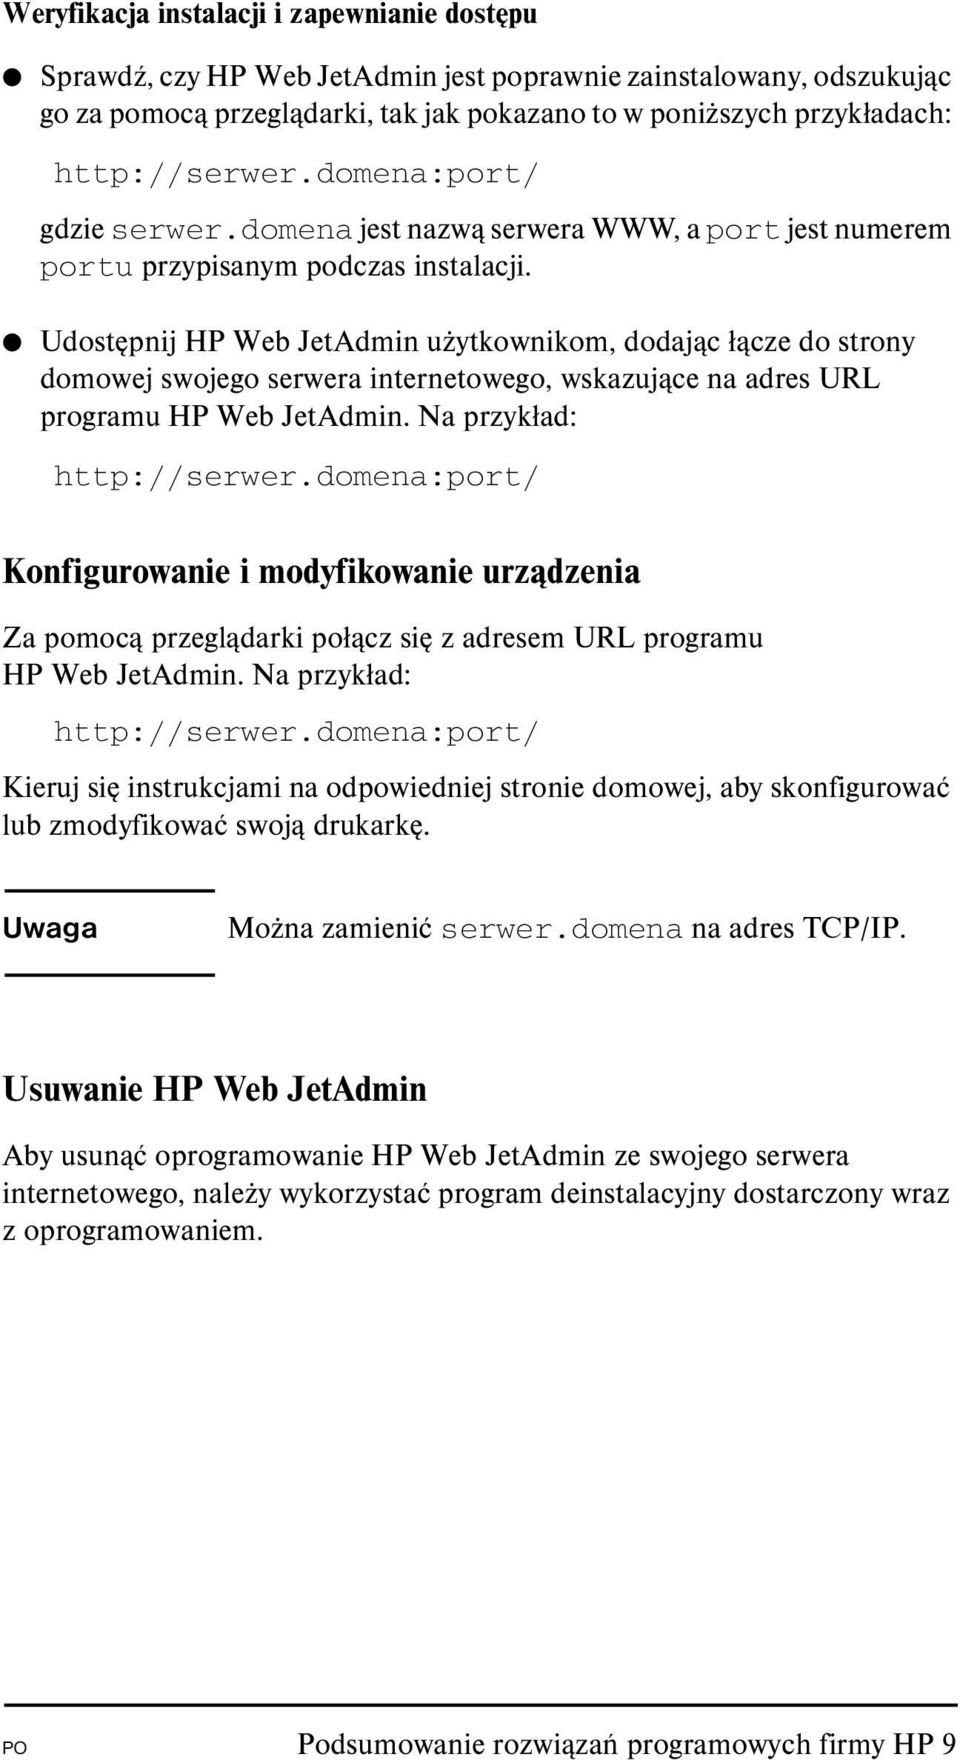 Udostępnij HP Web JetAdmin użytkownikom, dodając łącze do strony domowej swojego serwera internetowego, wskazujące na adres URL programu HP Web JetAdmin. Na przykład: http://serwer.